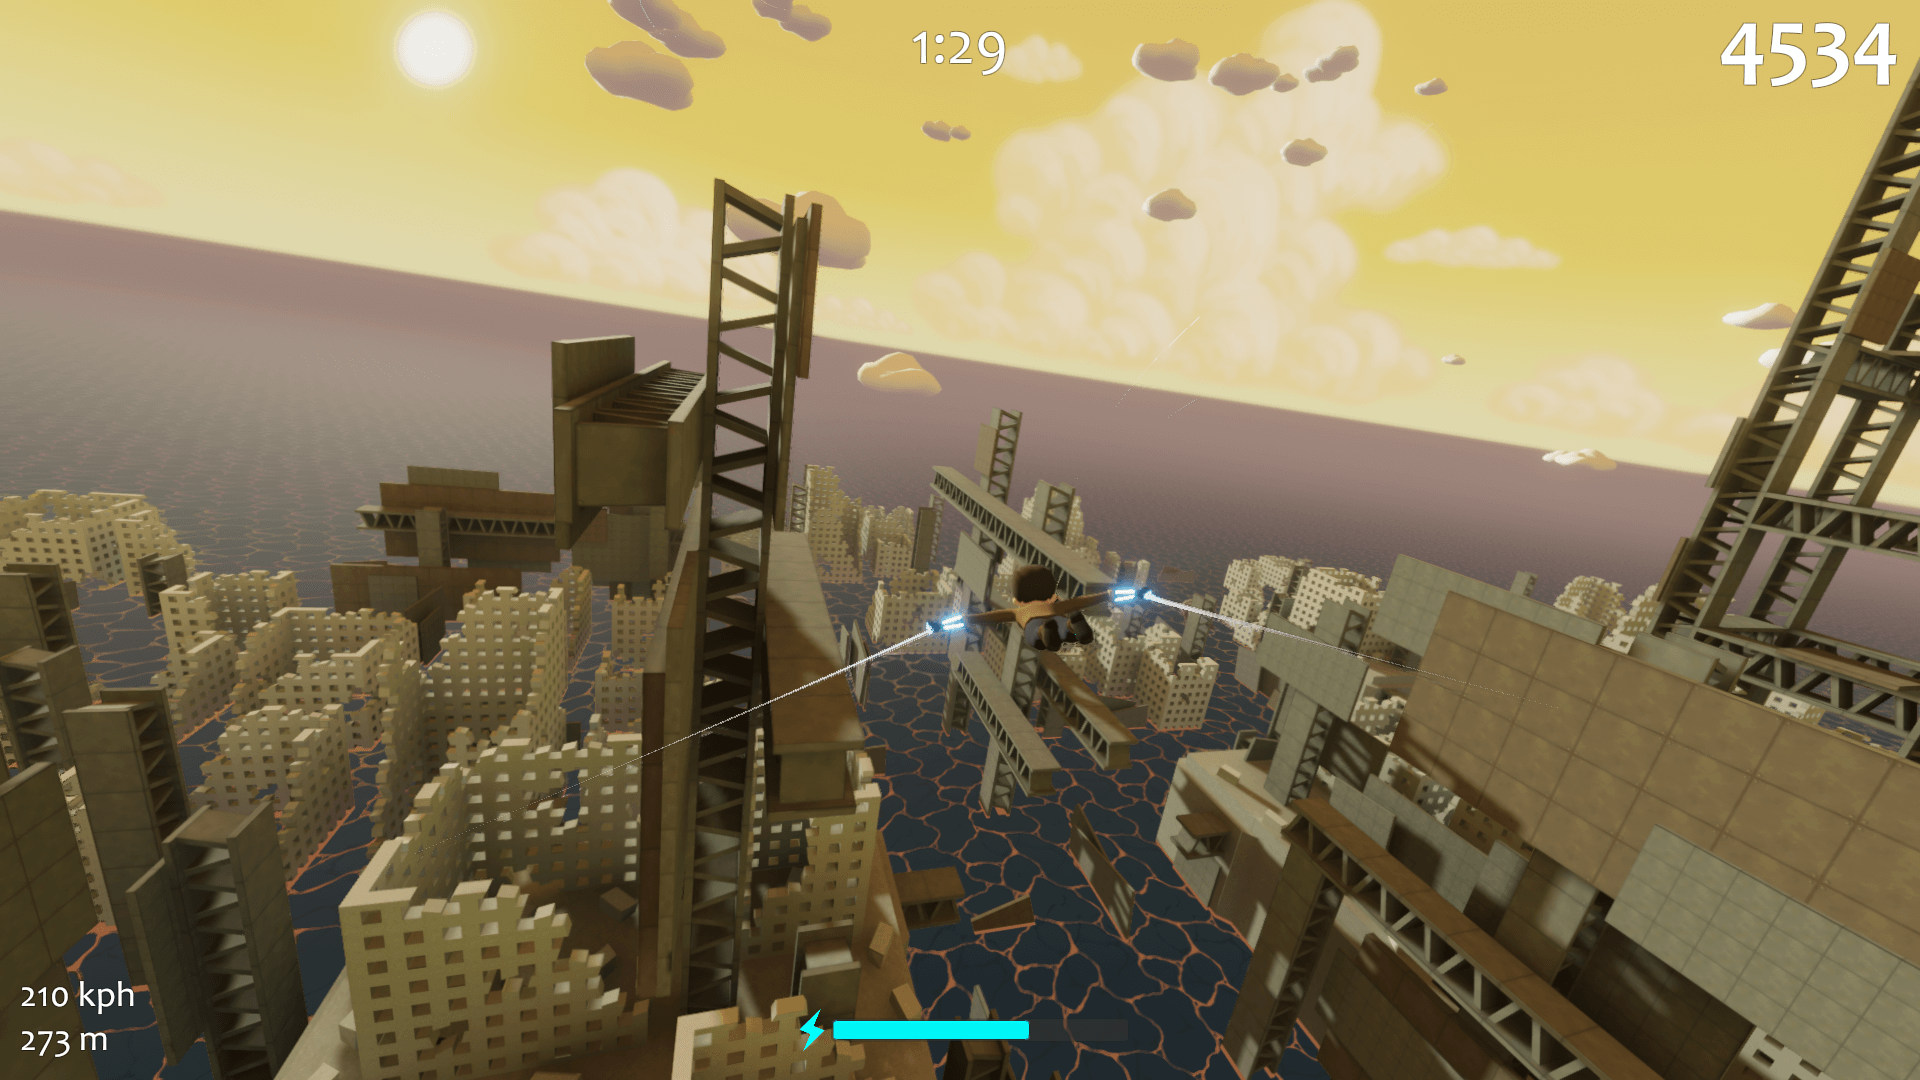 Flying along a huge metal girder above a sunken city